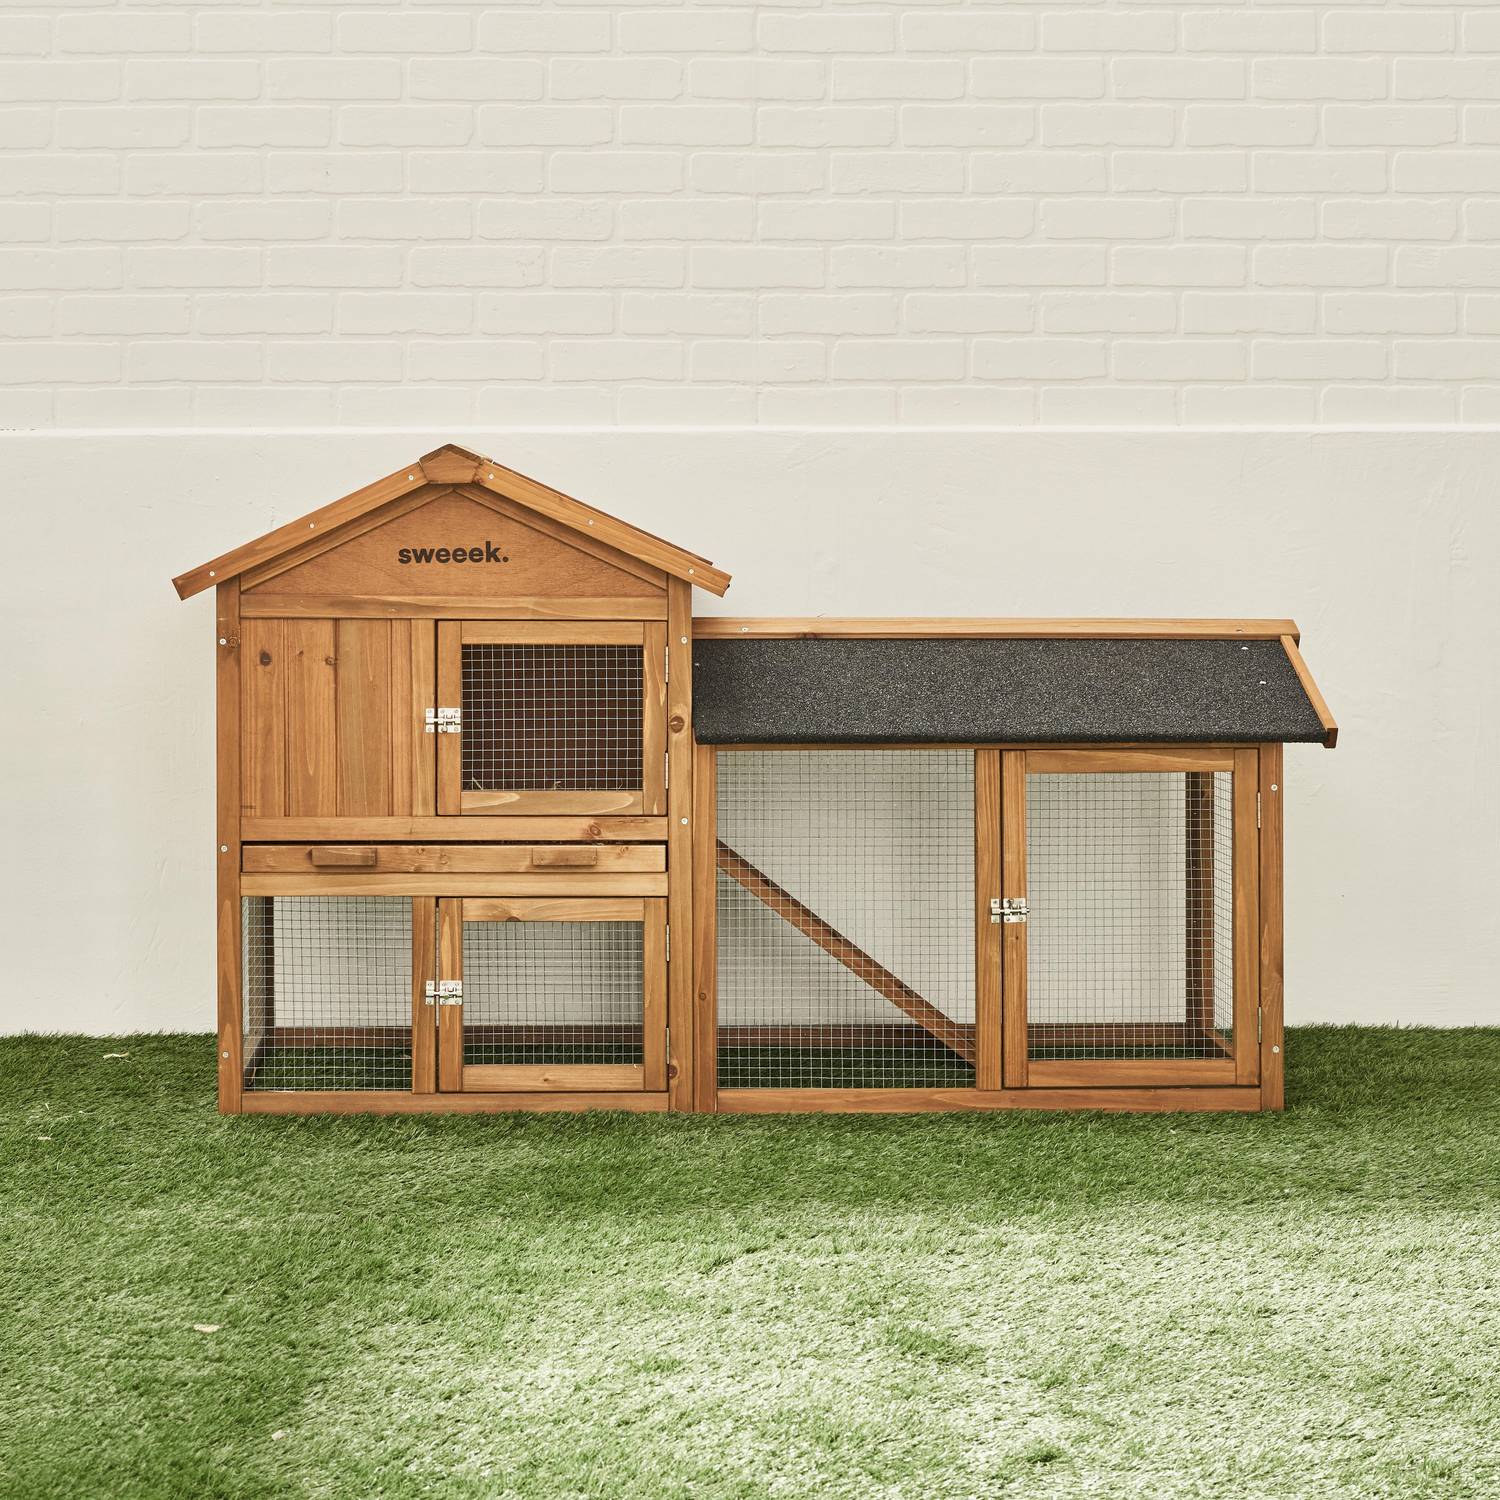 HOTOT Holzhaus für Kaninchen und andere Nagetiere, 4 Kaninchen, Kaninchenkäfig mit Gehege, Innen- und Außenbereich, Hühnerhaus Photo2